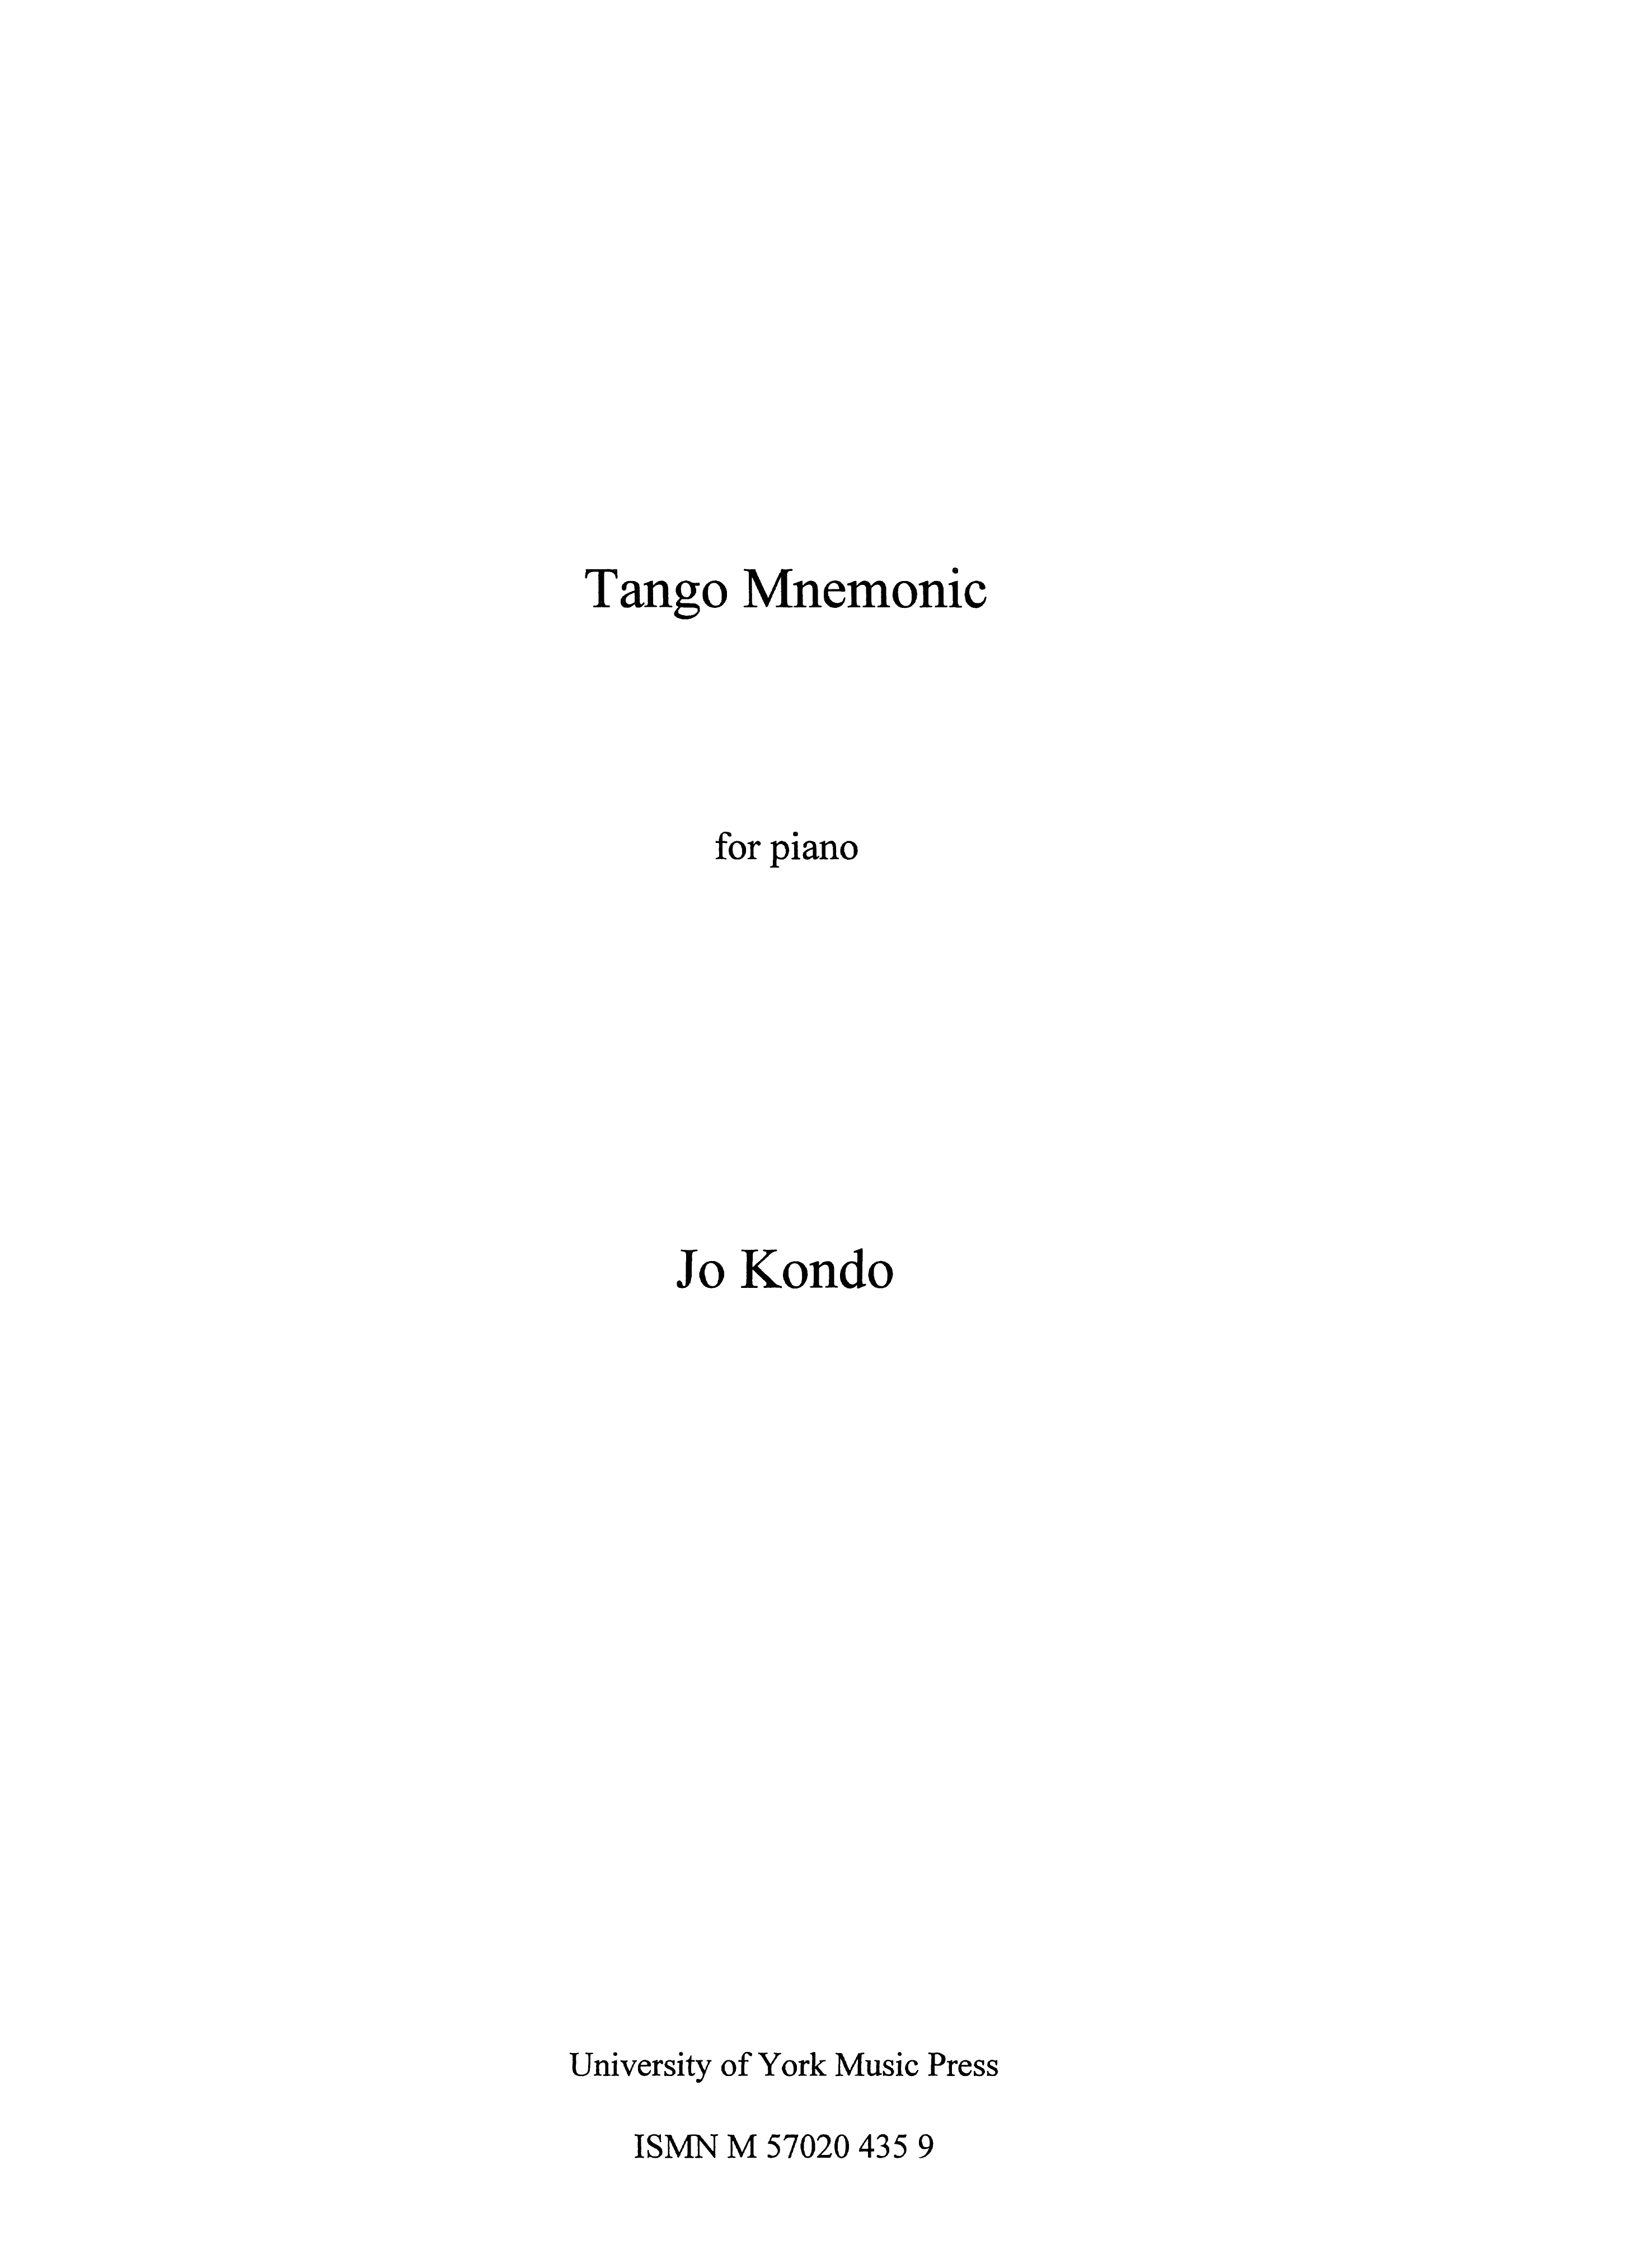 Jo Kondo: Tango Mnemonic: Piano: Instrumental Work